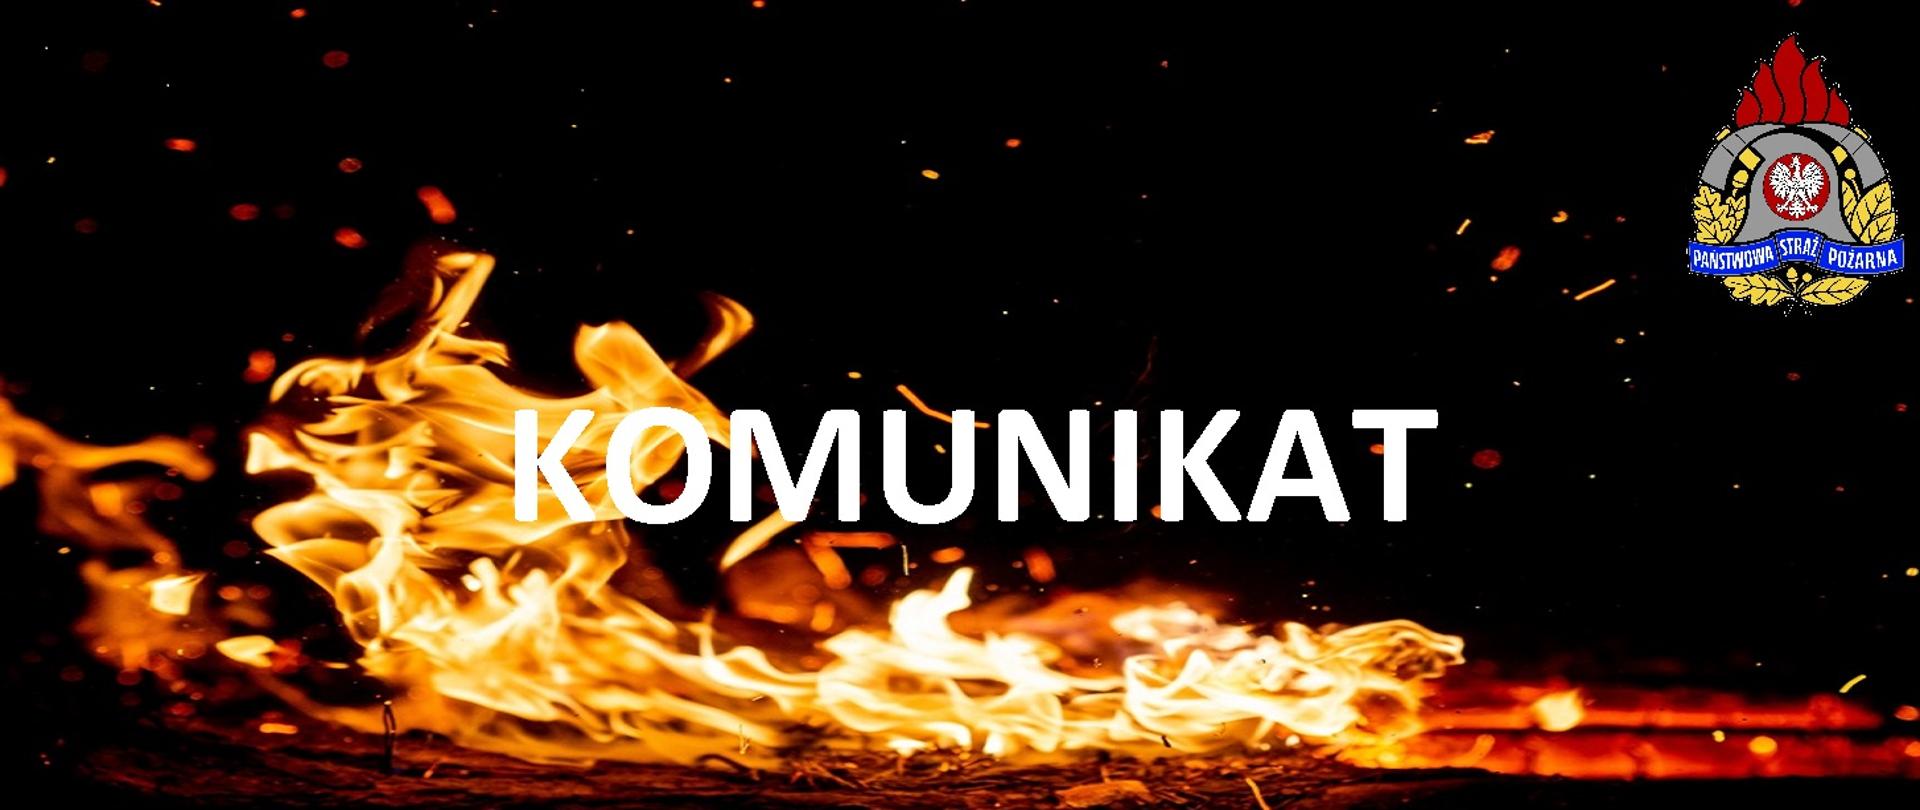 Płomienie, logo PSP oraz napis komunikat na czarnym tle